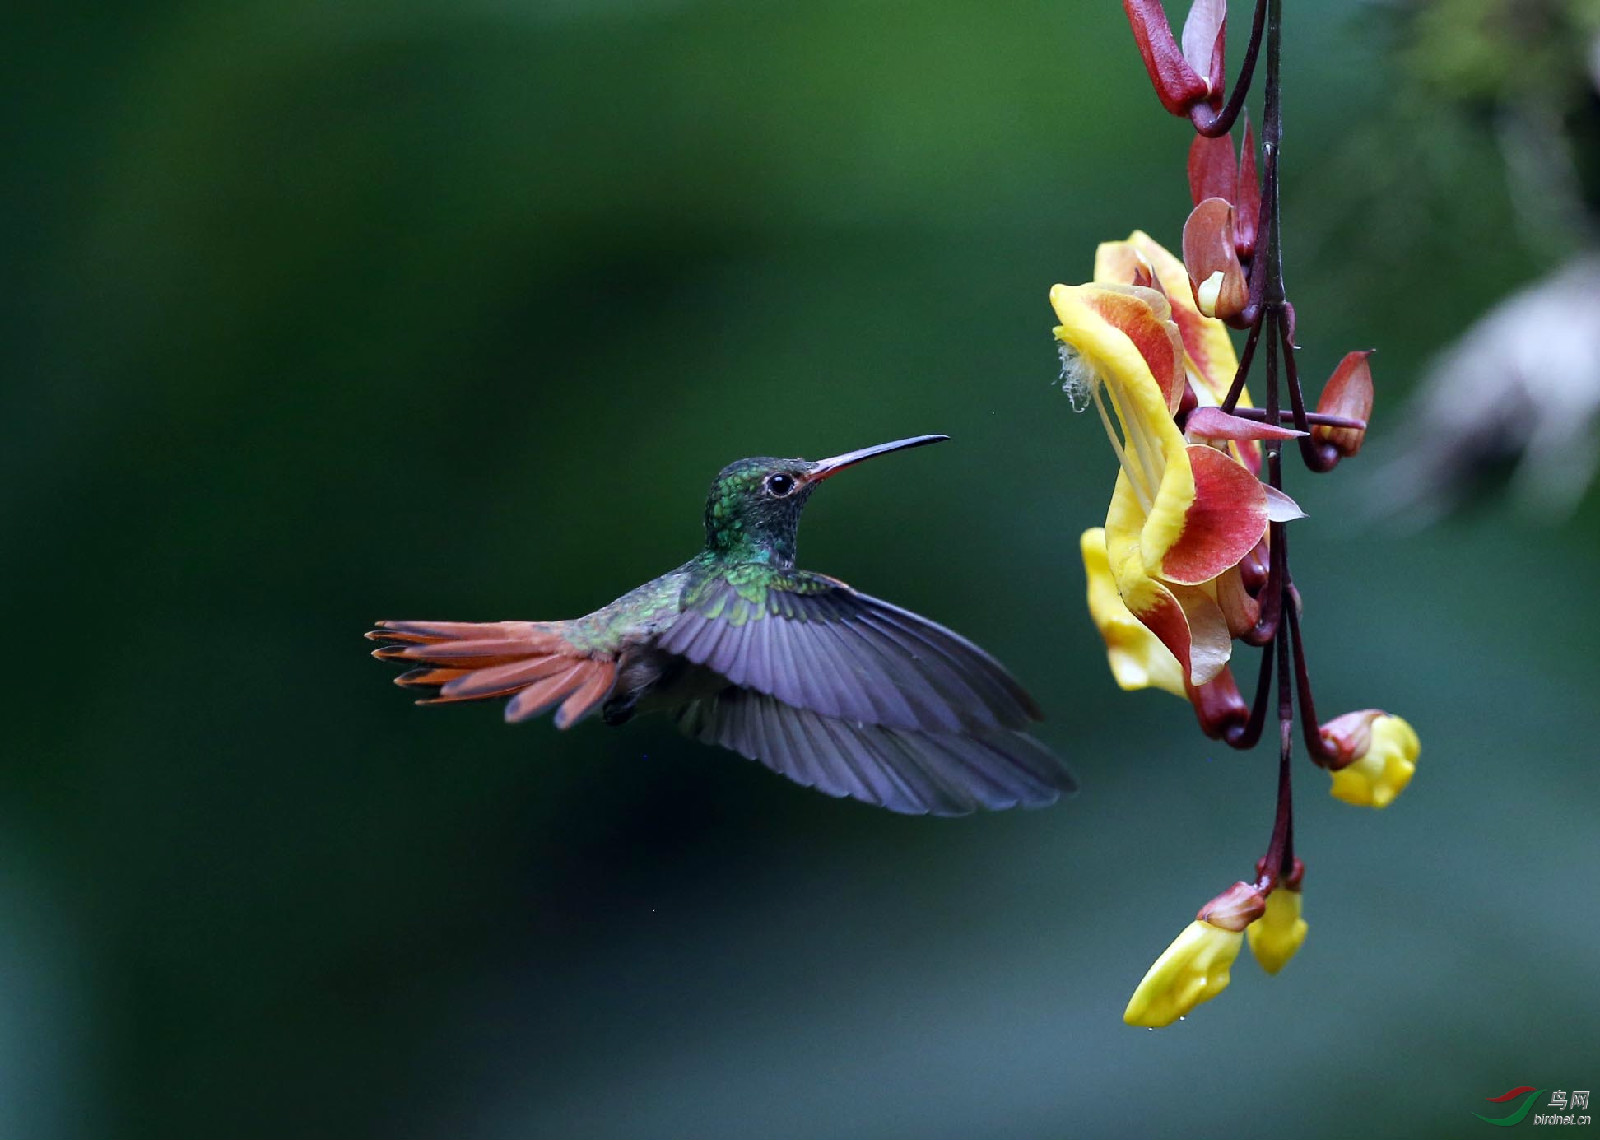 厄瓜多斑尾蜂鳥